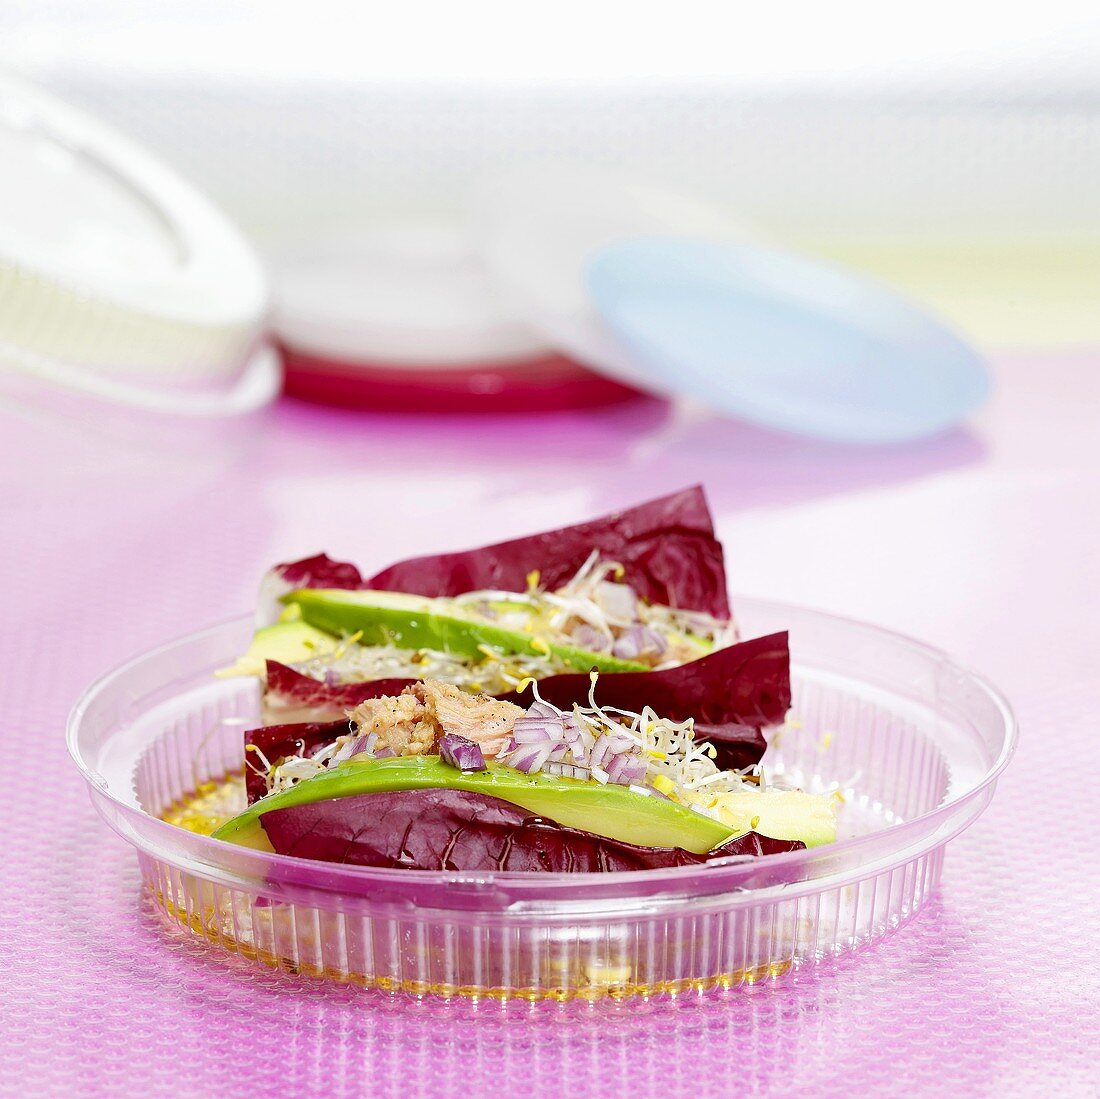 Radicchiosalat mit Thunfisch & Avocado in einer Plastikschale